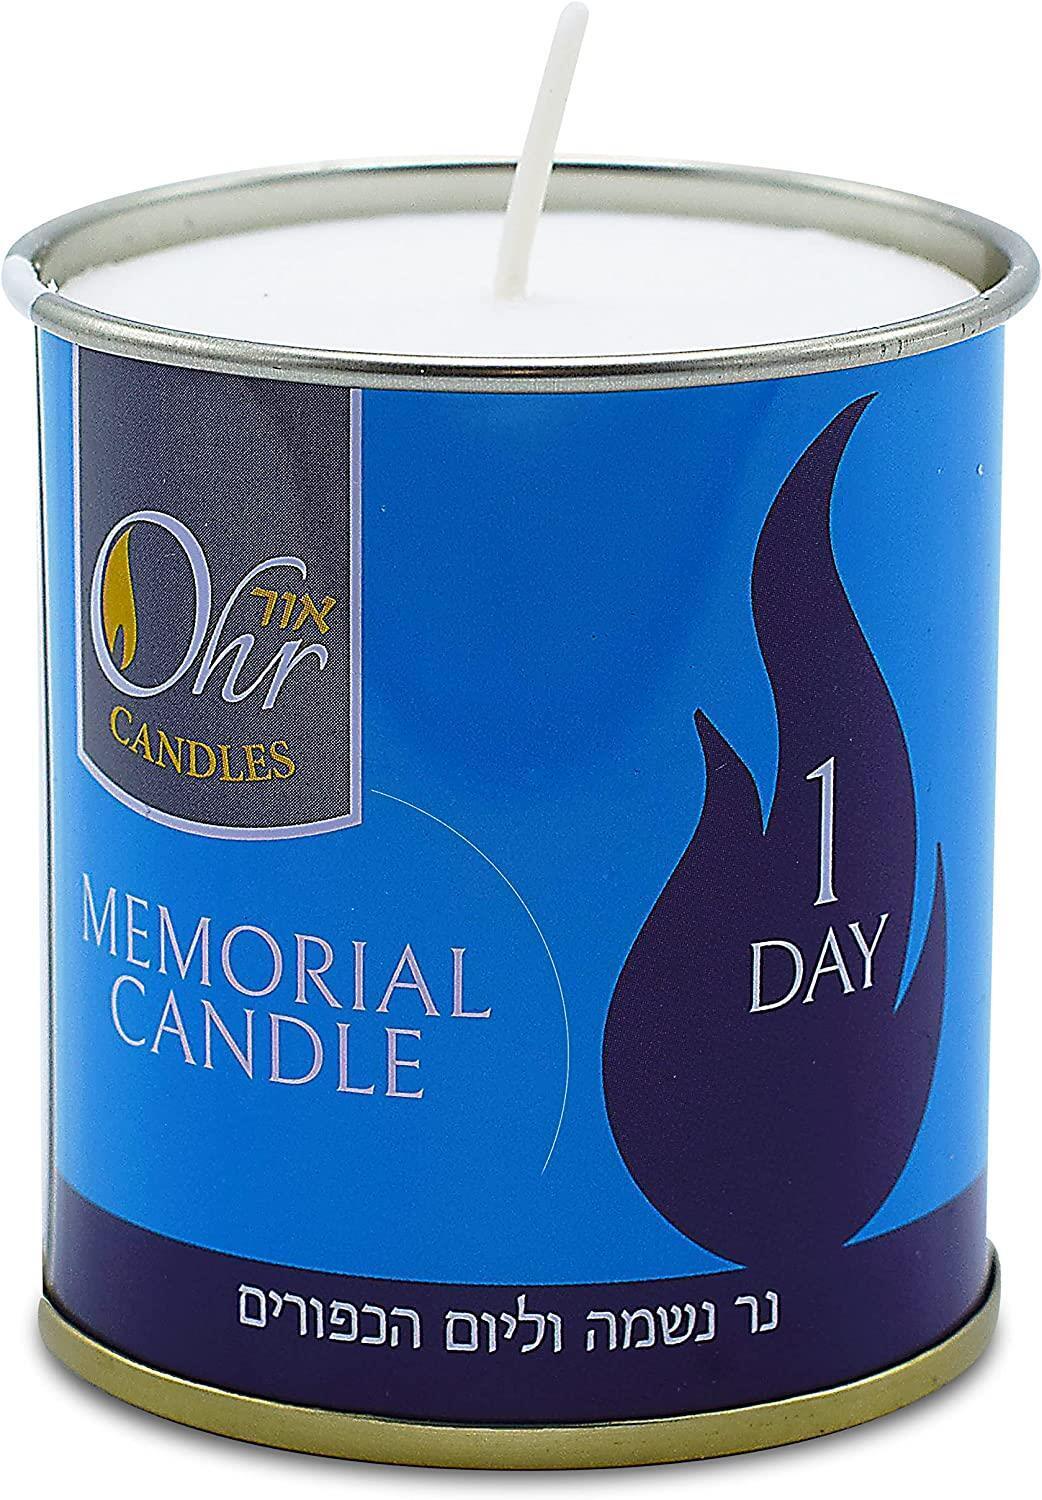 Yahrzeit Memorial Candles Ner Neshama 24 Hours Kosher Yizkor Yarzheit Candle 1D